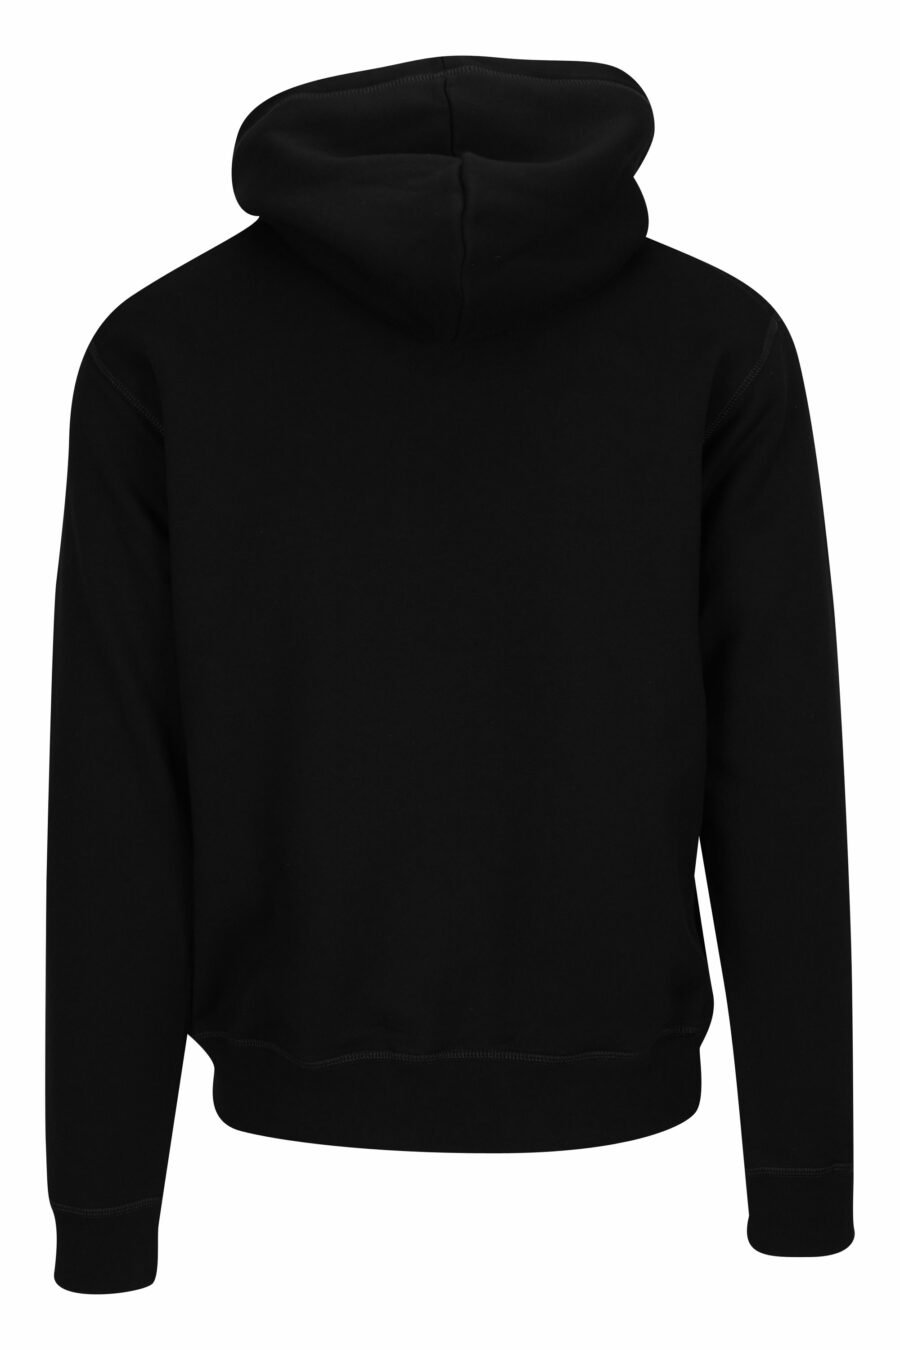 Schwarzes Kapuzensweatshirt mit neongrünem, verschwommenem "Icon" Maxilog - 8054148360436 1